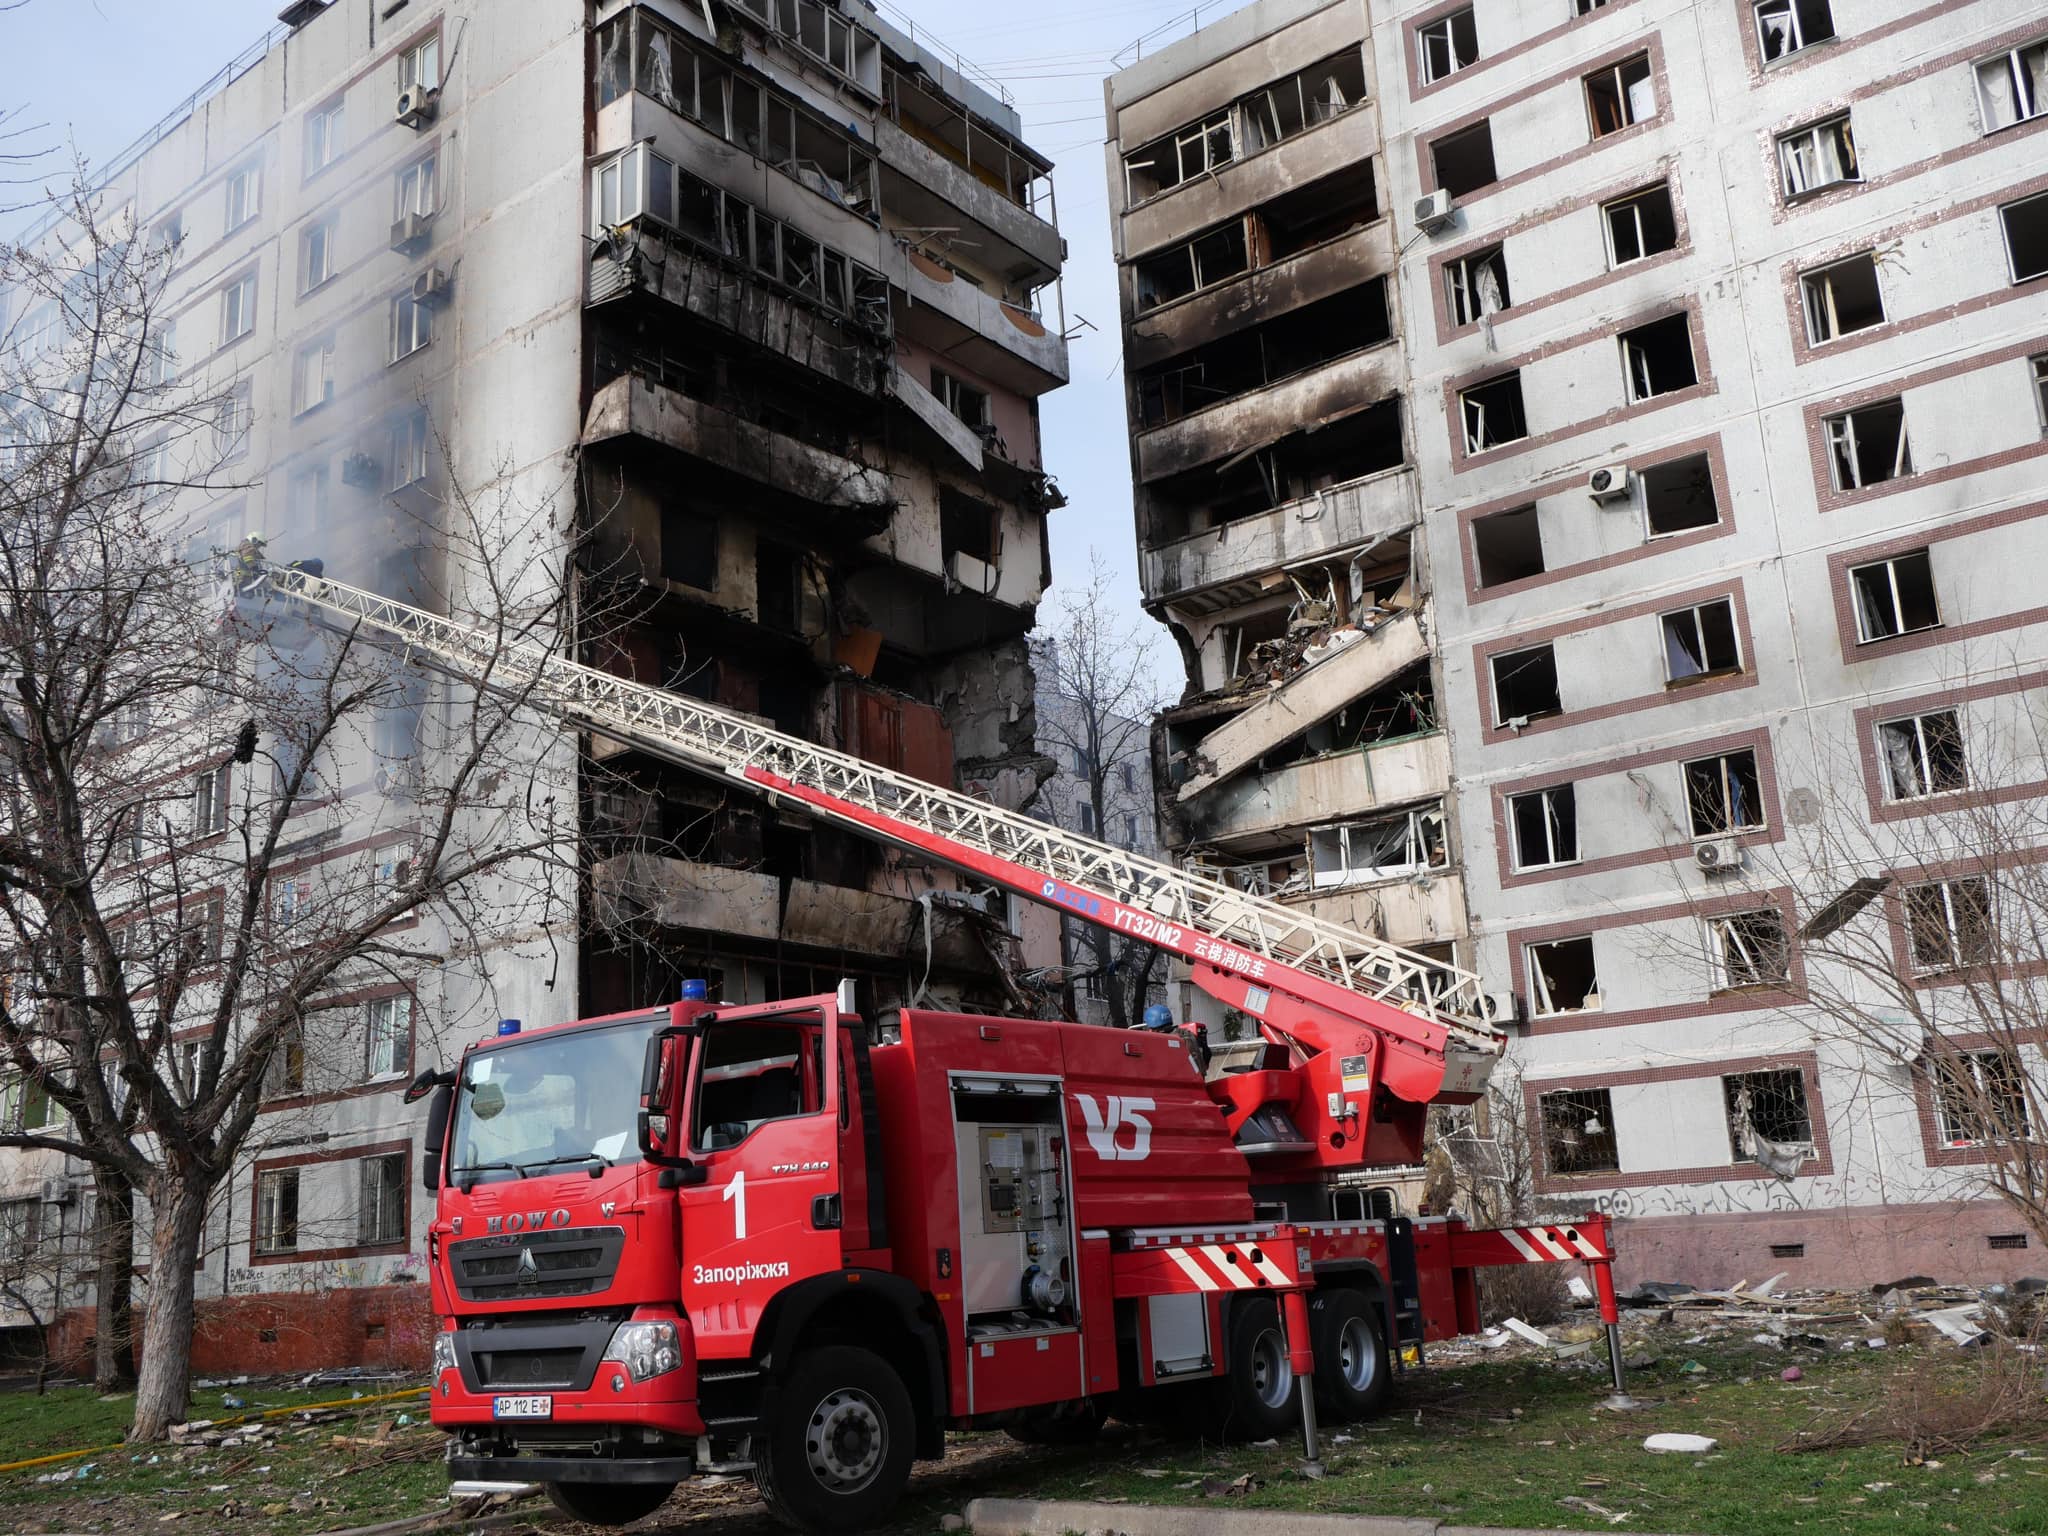 Рятувальна операція в Запоріжжі завершена: від російської атаки загалом 34 людини постраждали, з них троє дітей, одна людина померла (ФОТО) 2